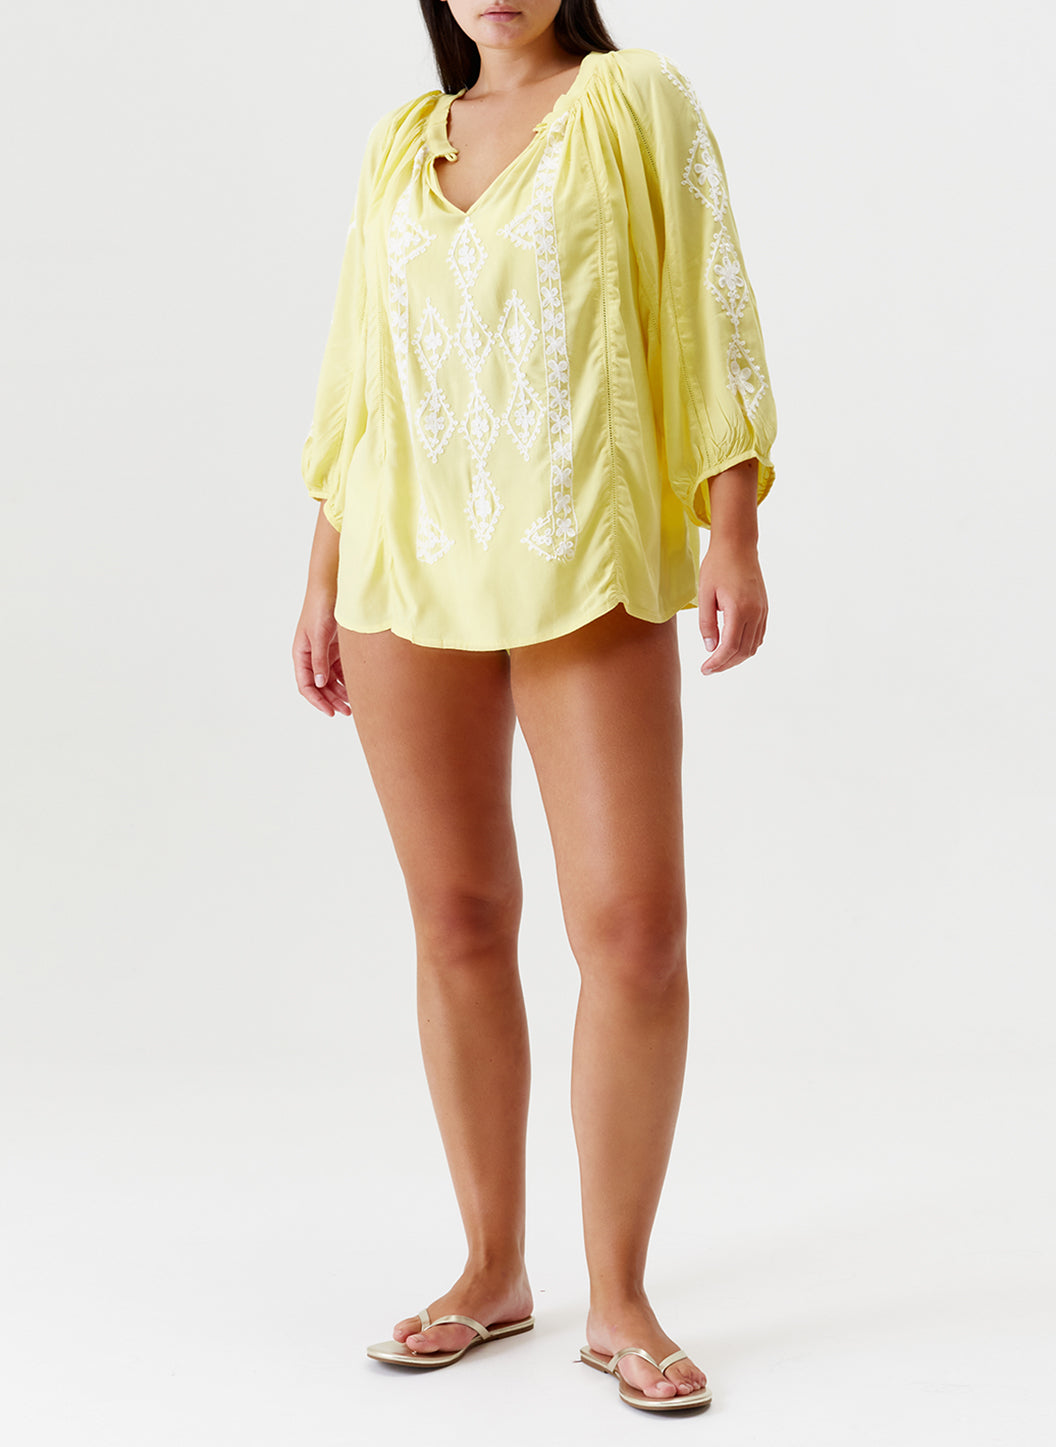 Melissa Odabash Aliya Yellow/White Embroidered Shirt - 2024 Collection